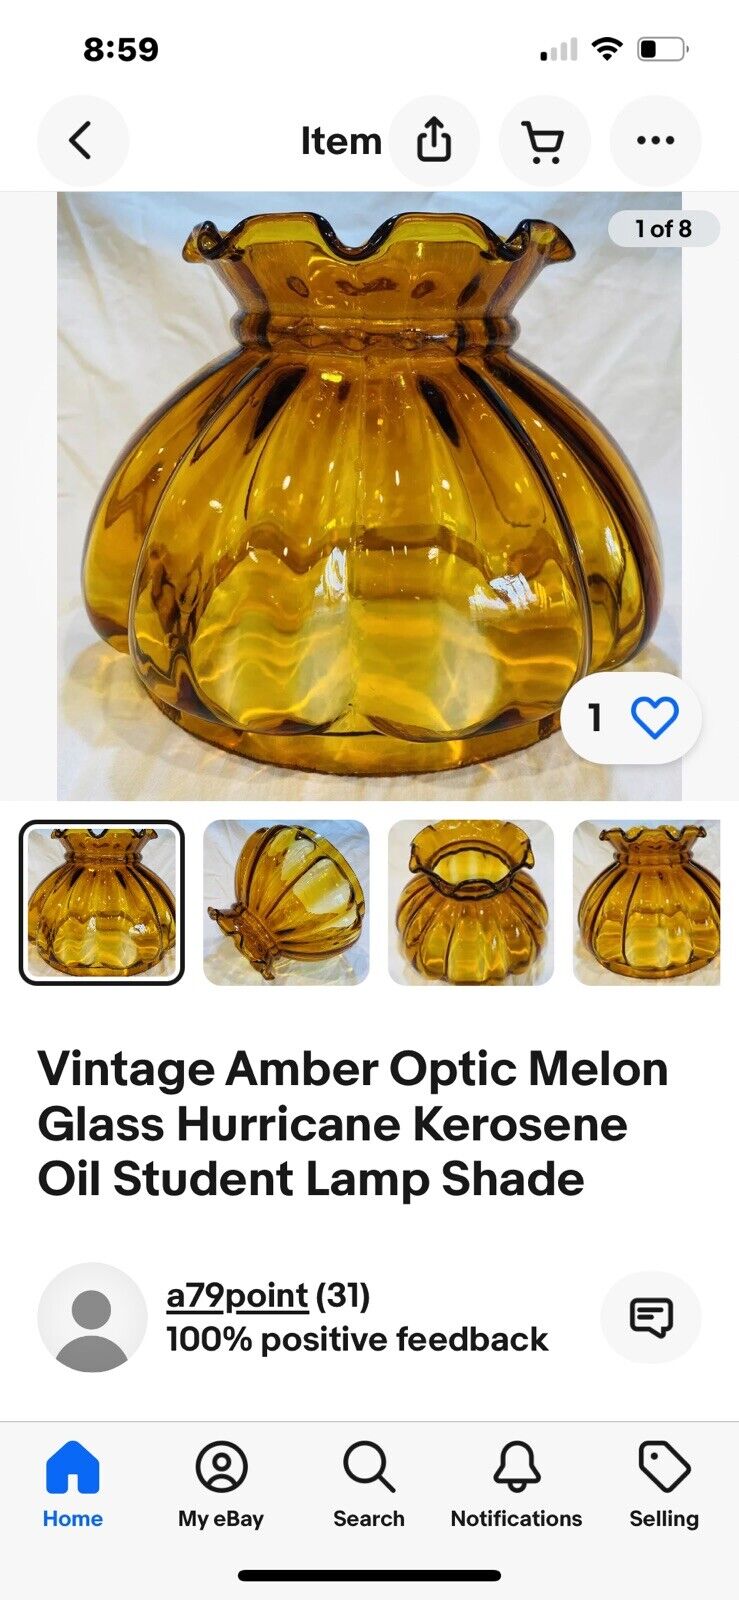 Vintage Amber Optic Melon Glass Hurricane Kerosene Oil Student Lamp Shade